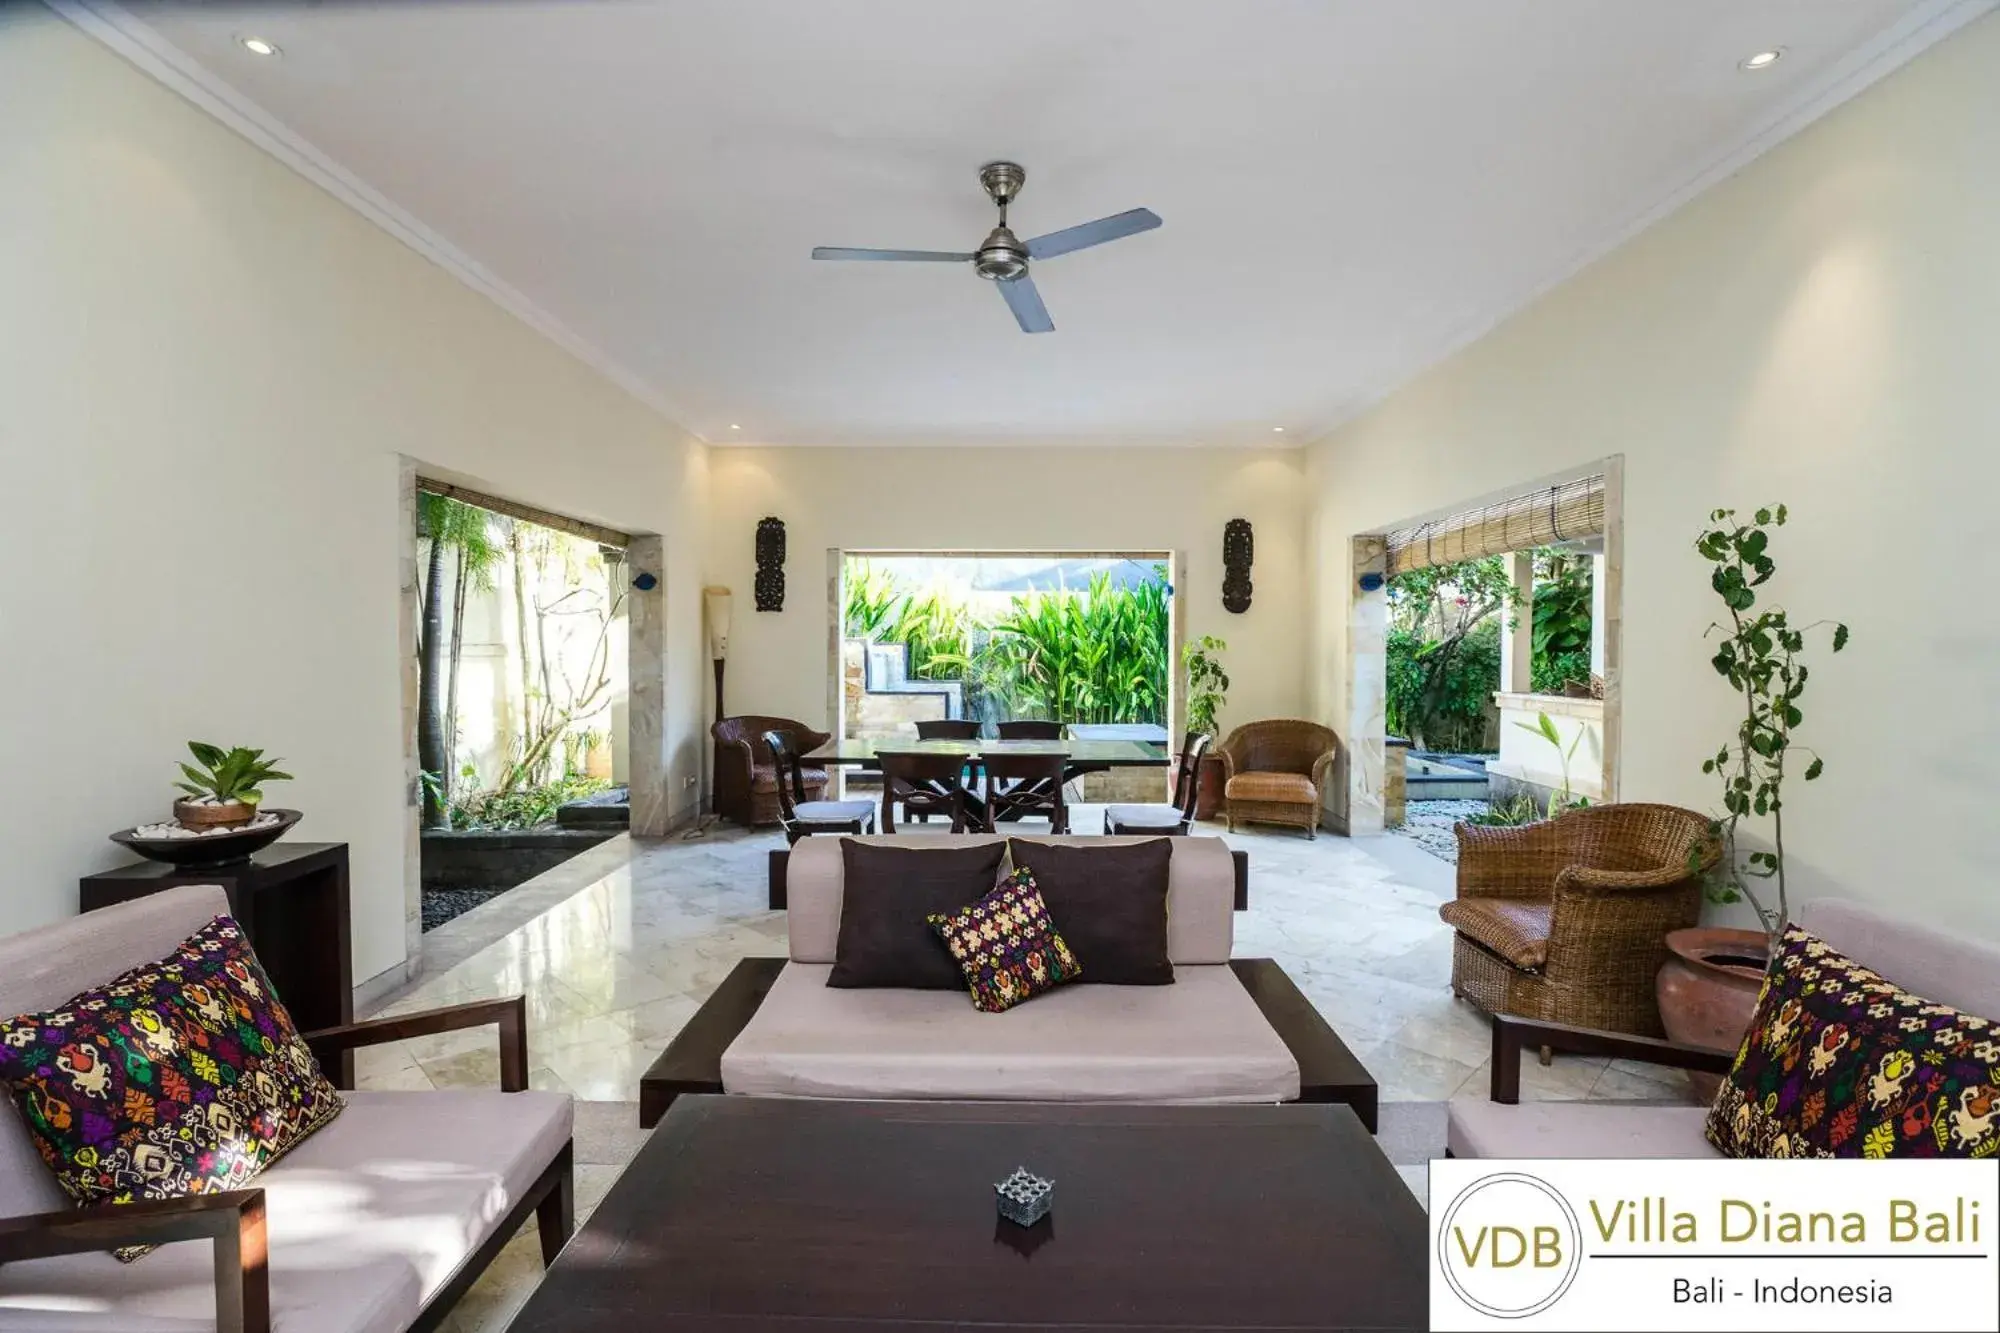 Living room in Villa Diana Bali